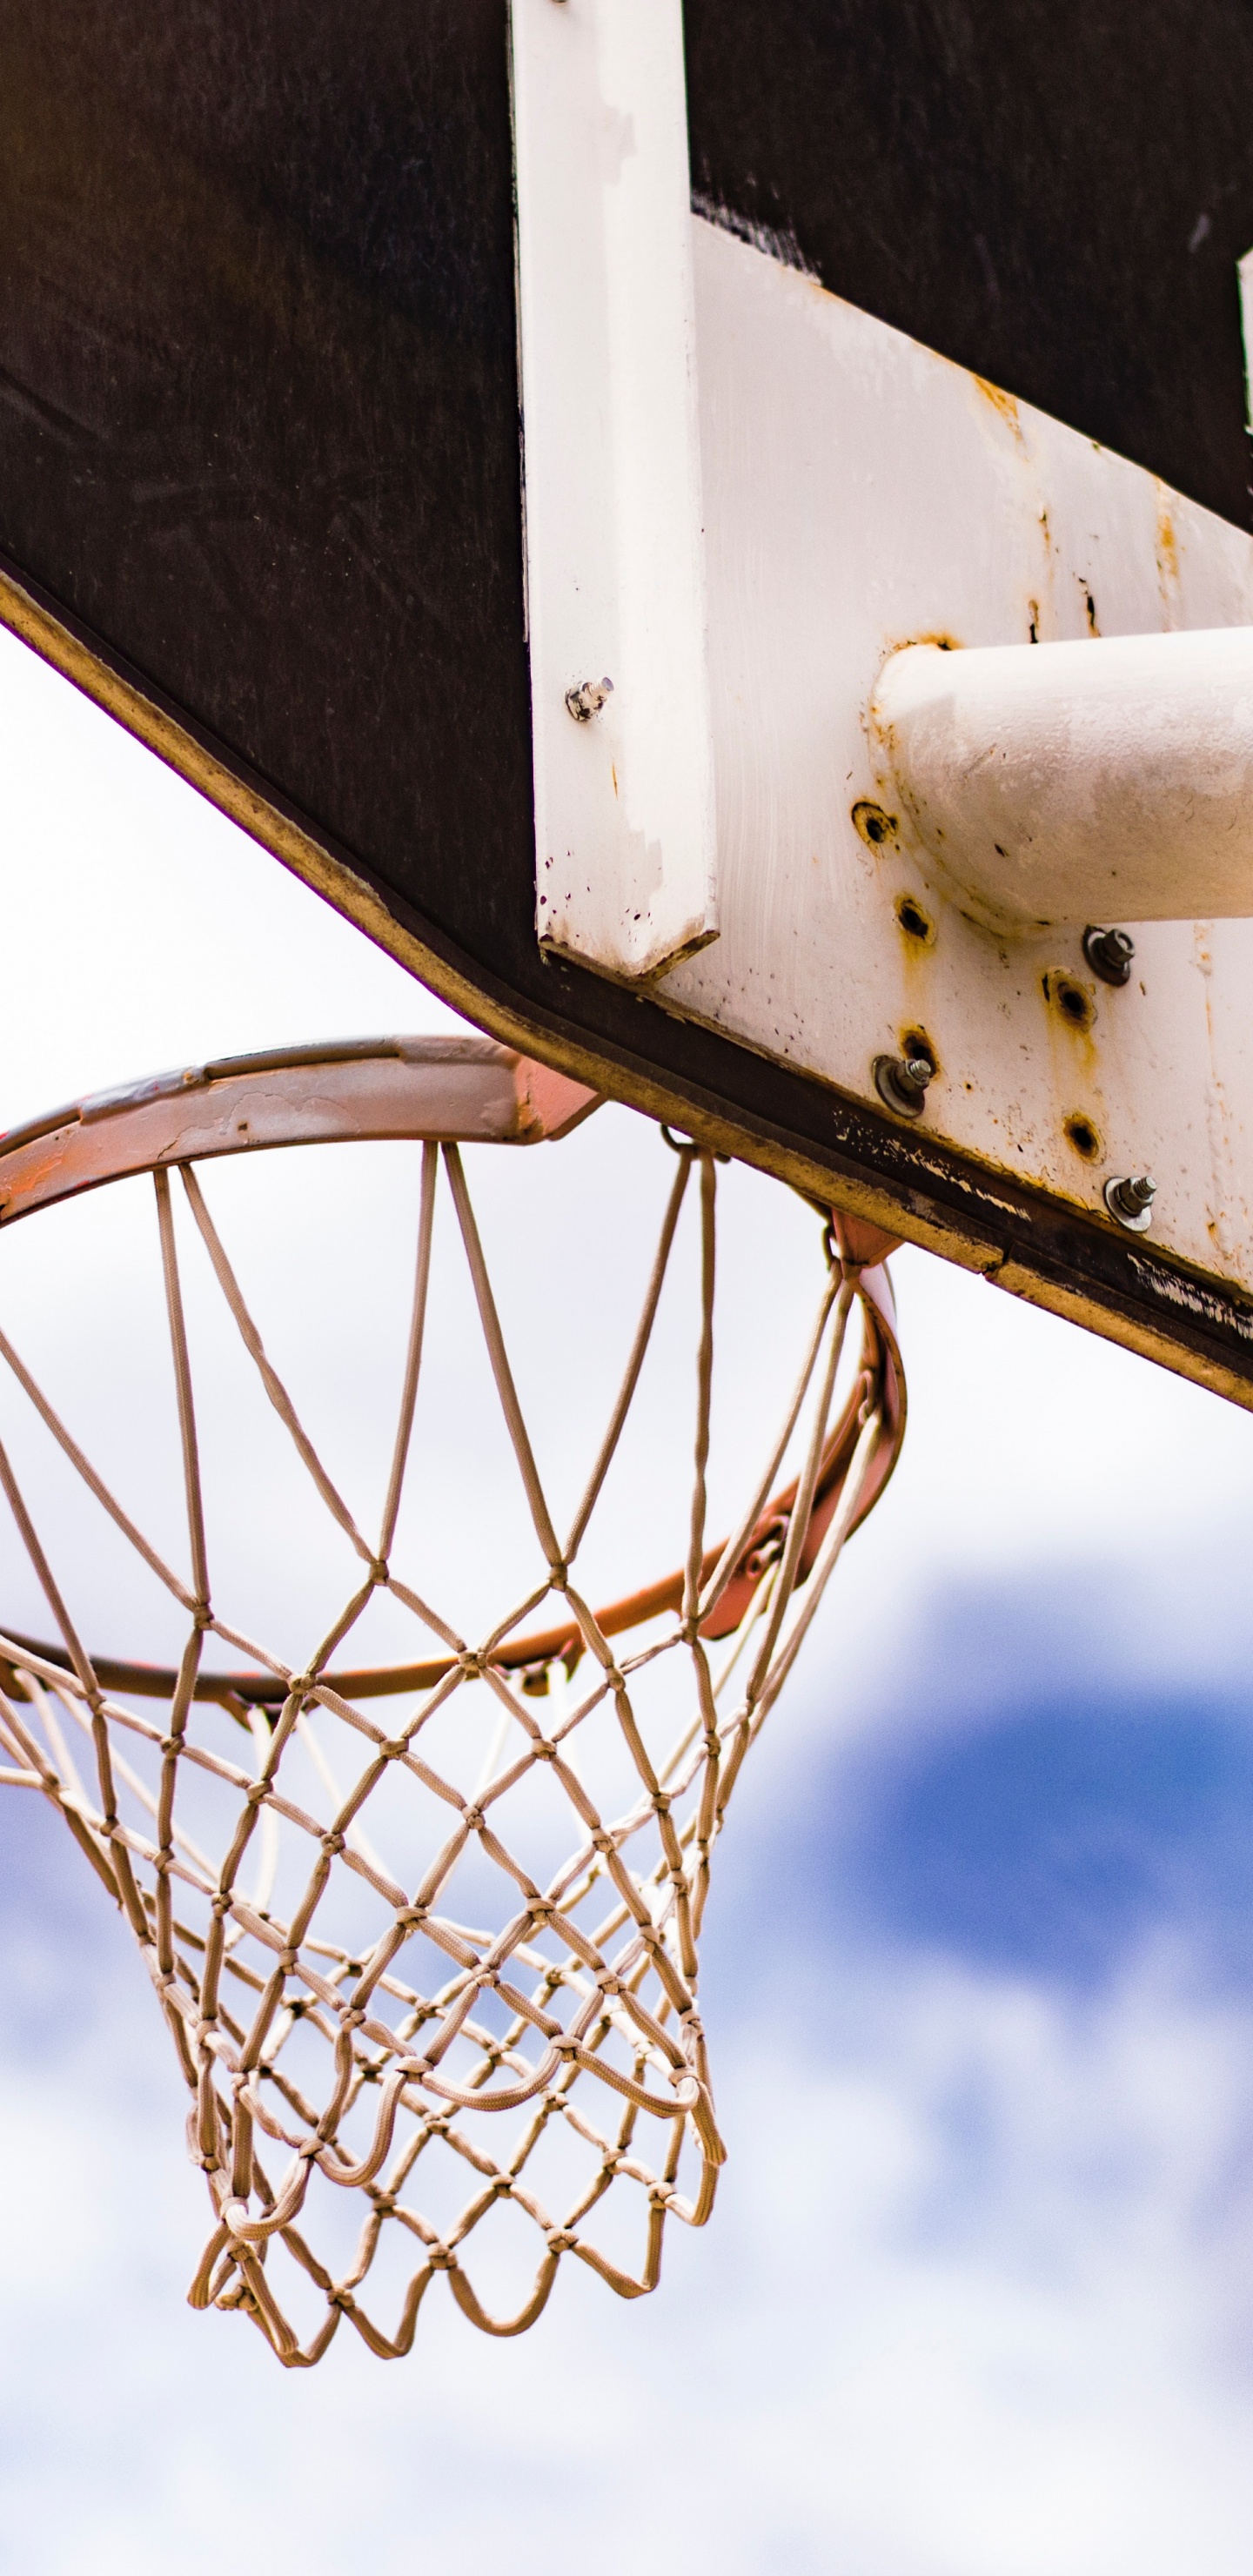 篮球, 篮球场, 街头, 团队运动, 球游戏 壁纸 1440x2960 允许